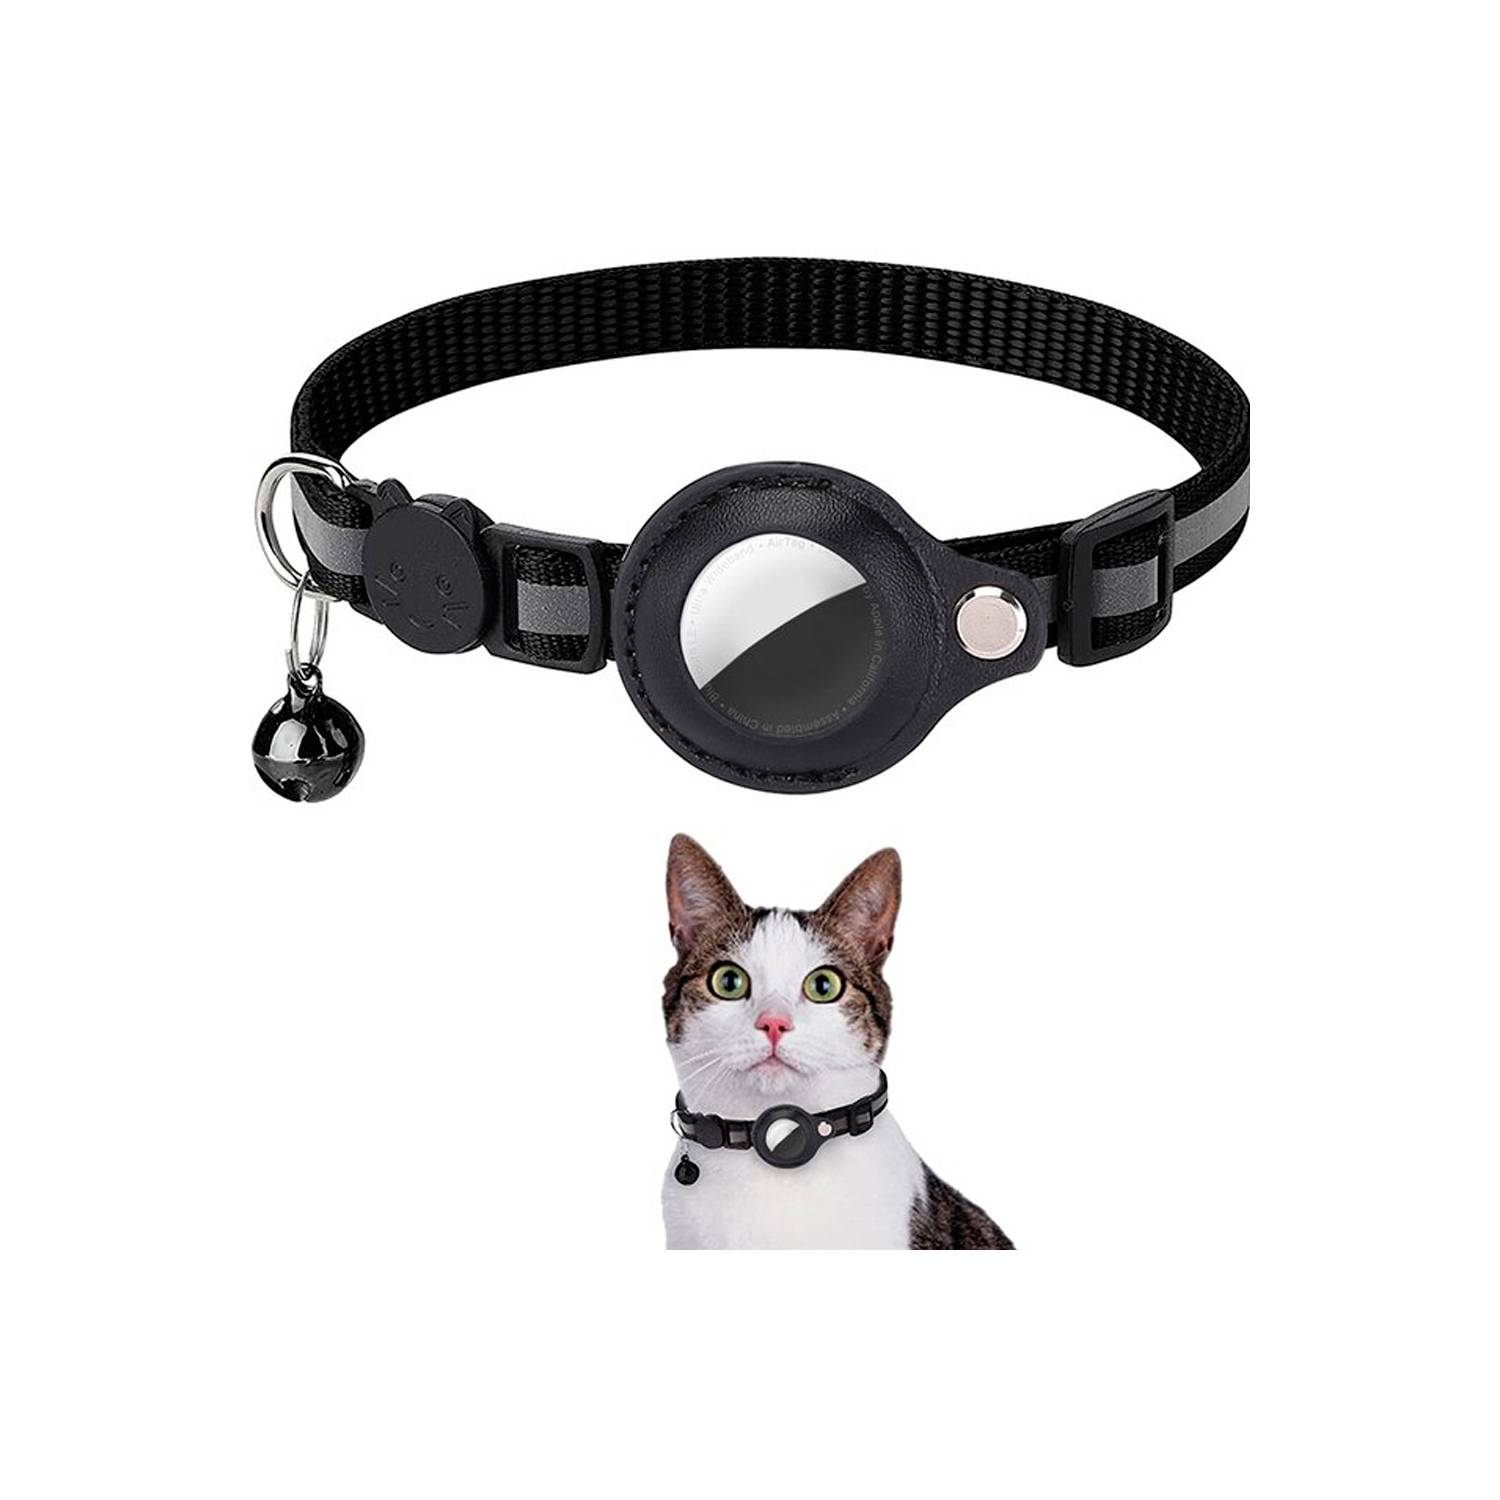 El collar que te ayuda a rastrear a tus gatos por Bluetooth, México, Estados Unidos, España, TECNOLOGIA